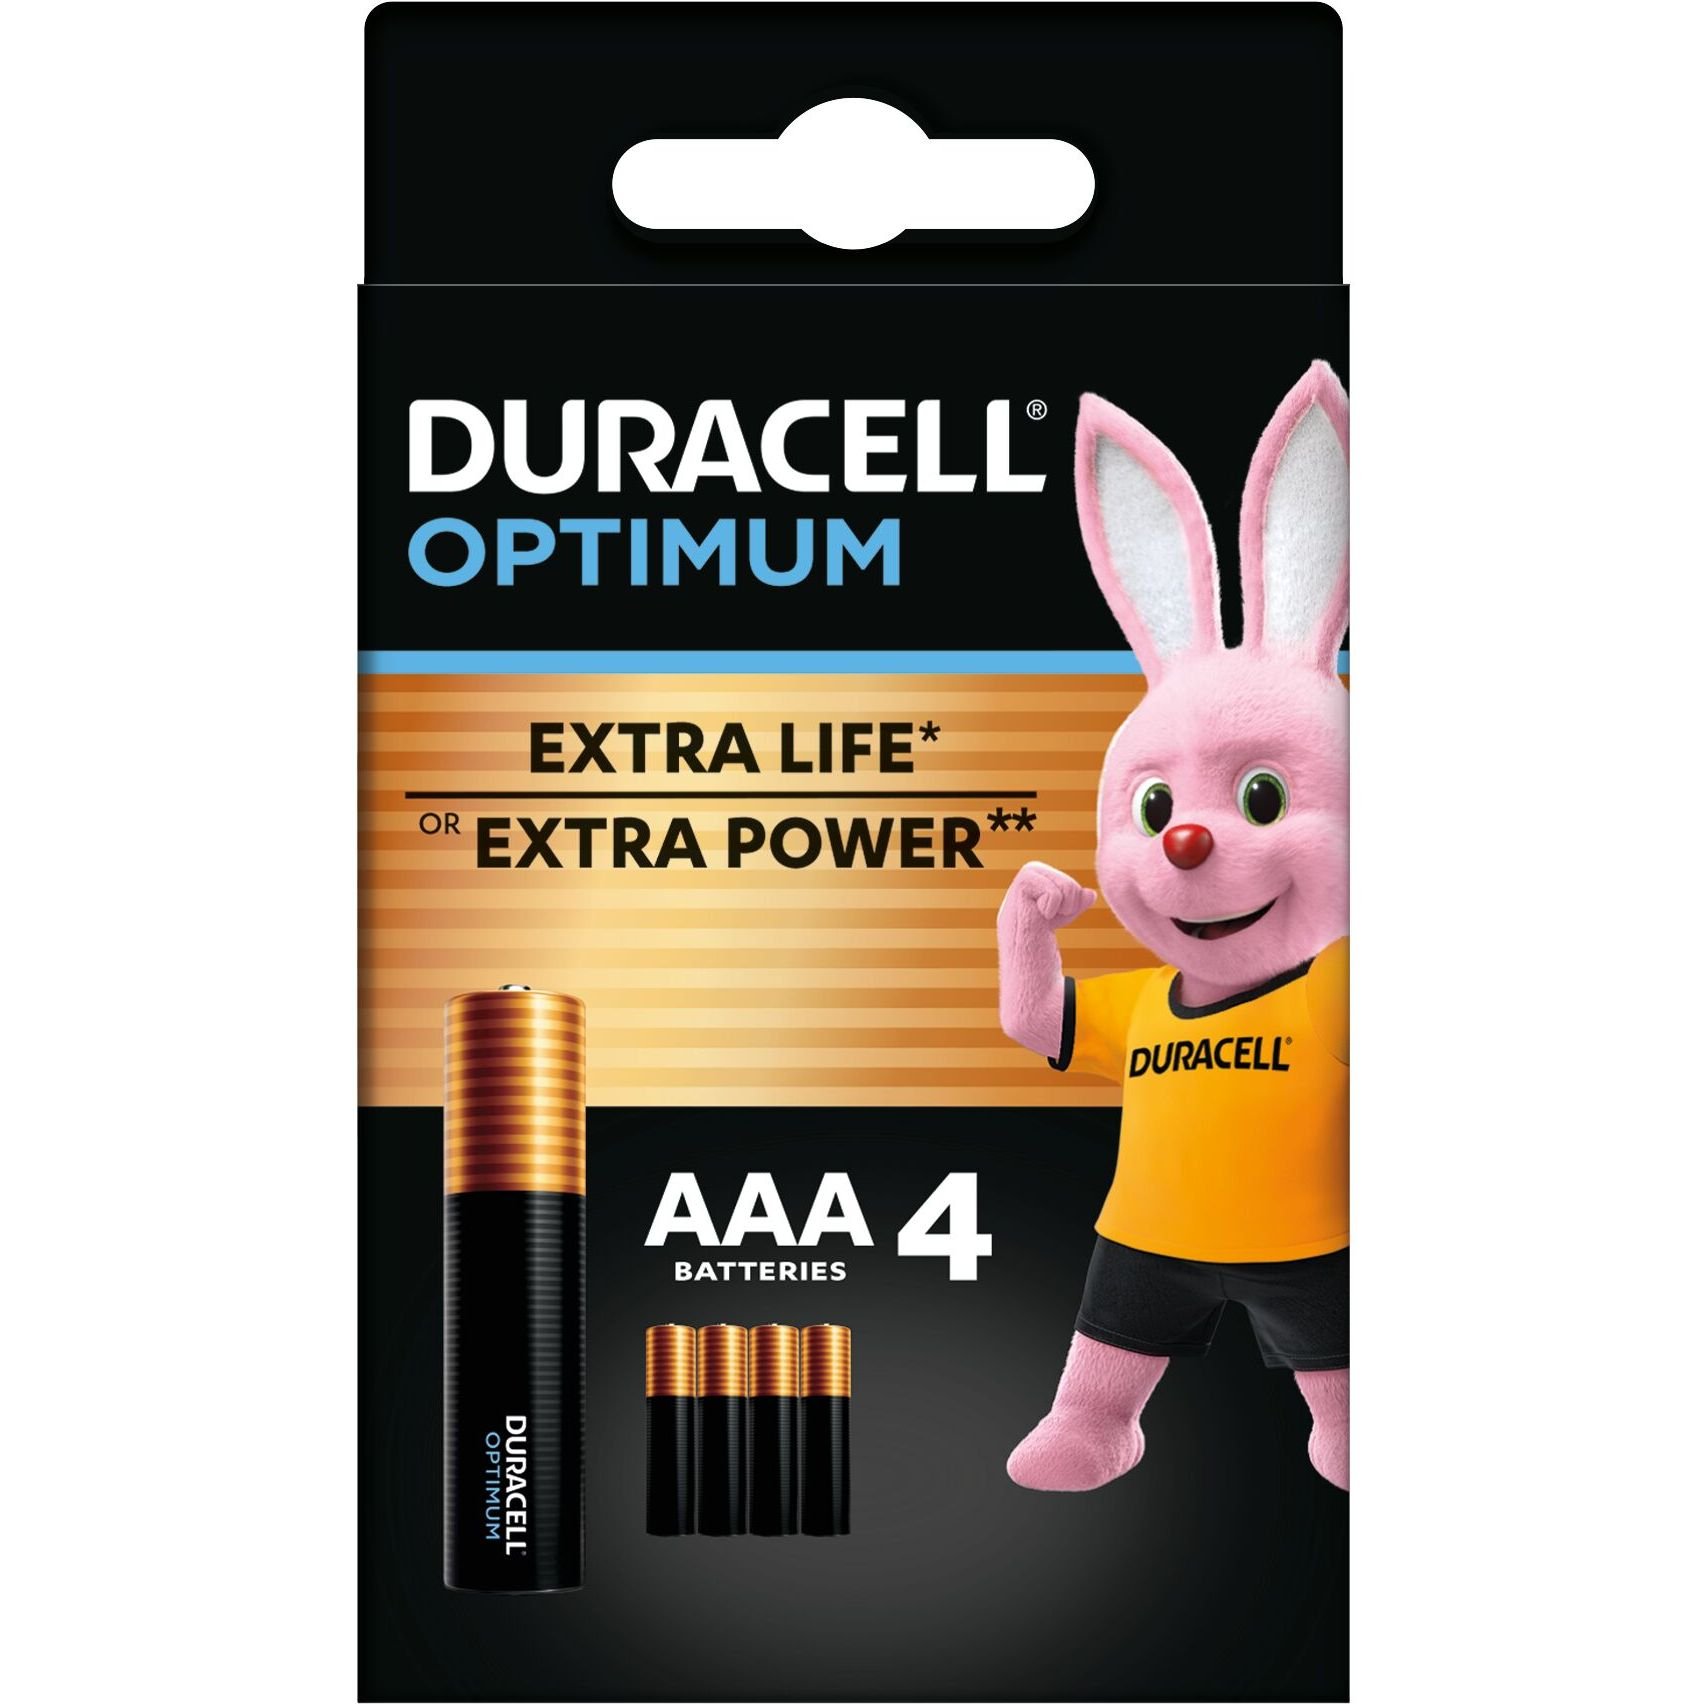 Лужні батарейки мізинчикові Duracell Optimum 1.5 V AAA LR6, 4 шт. (5000394158726) - фото 1